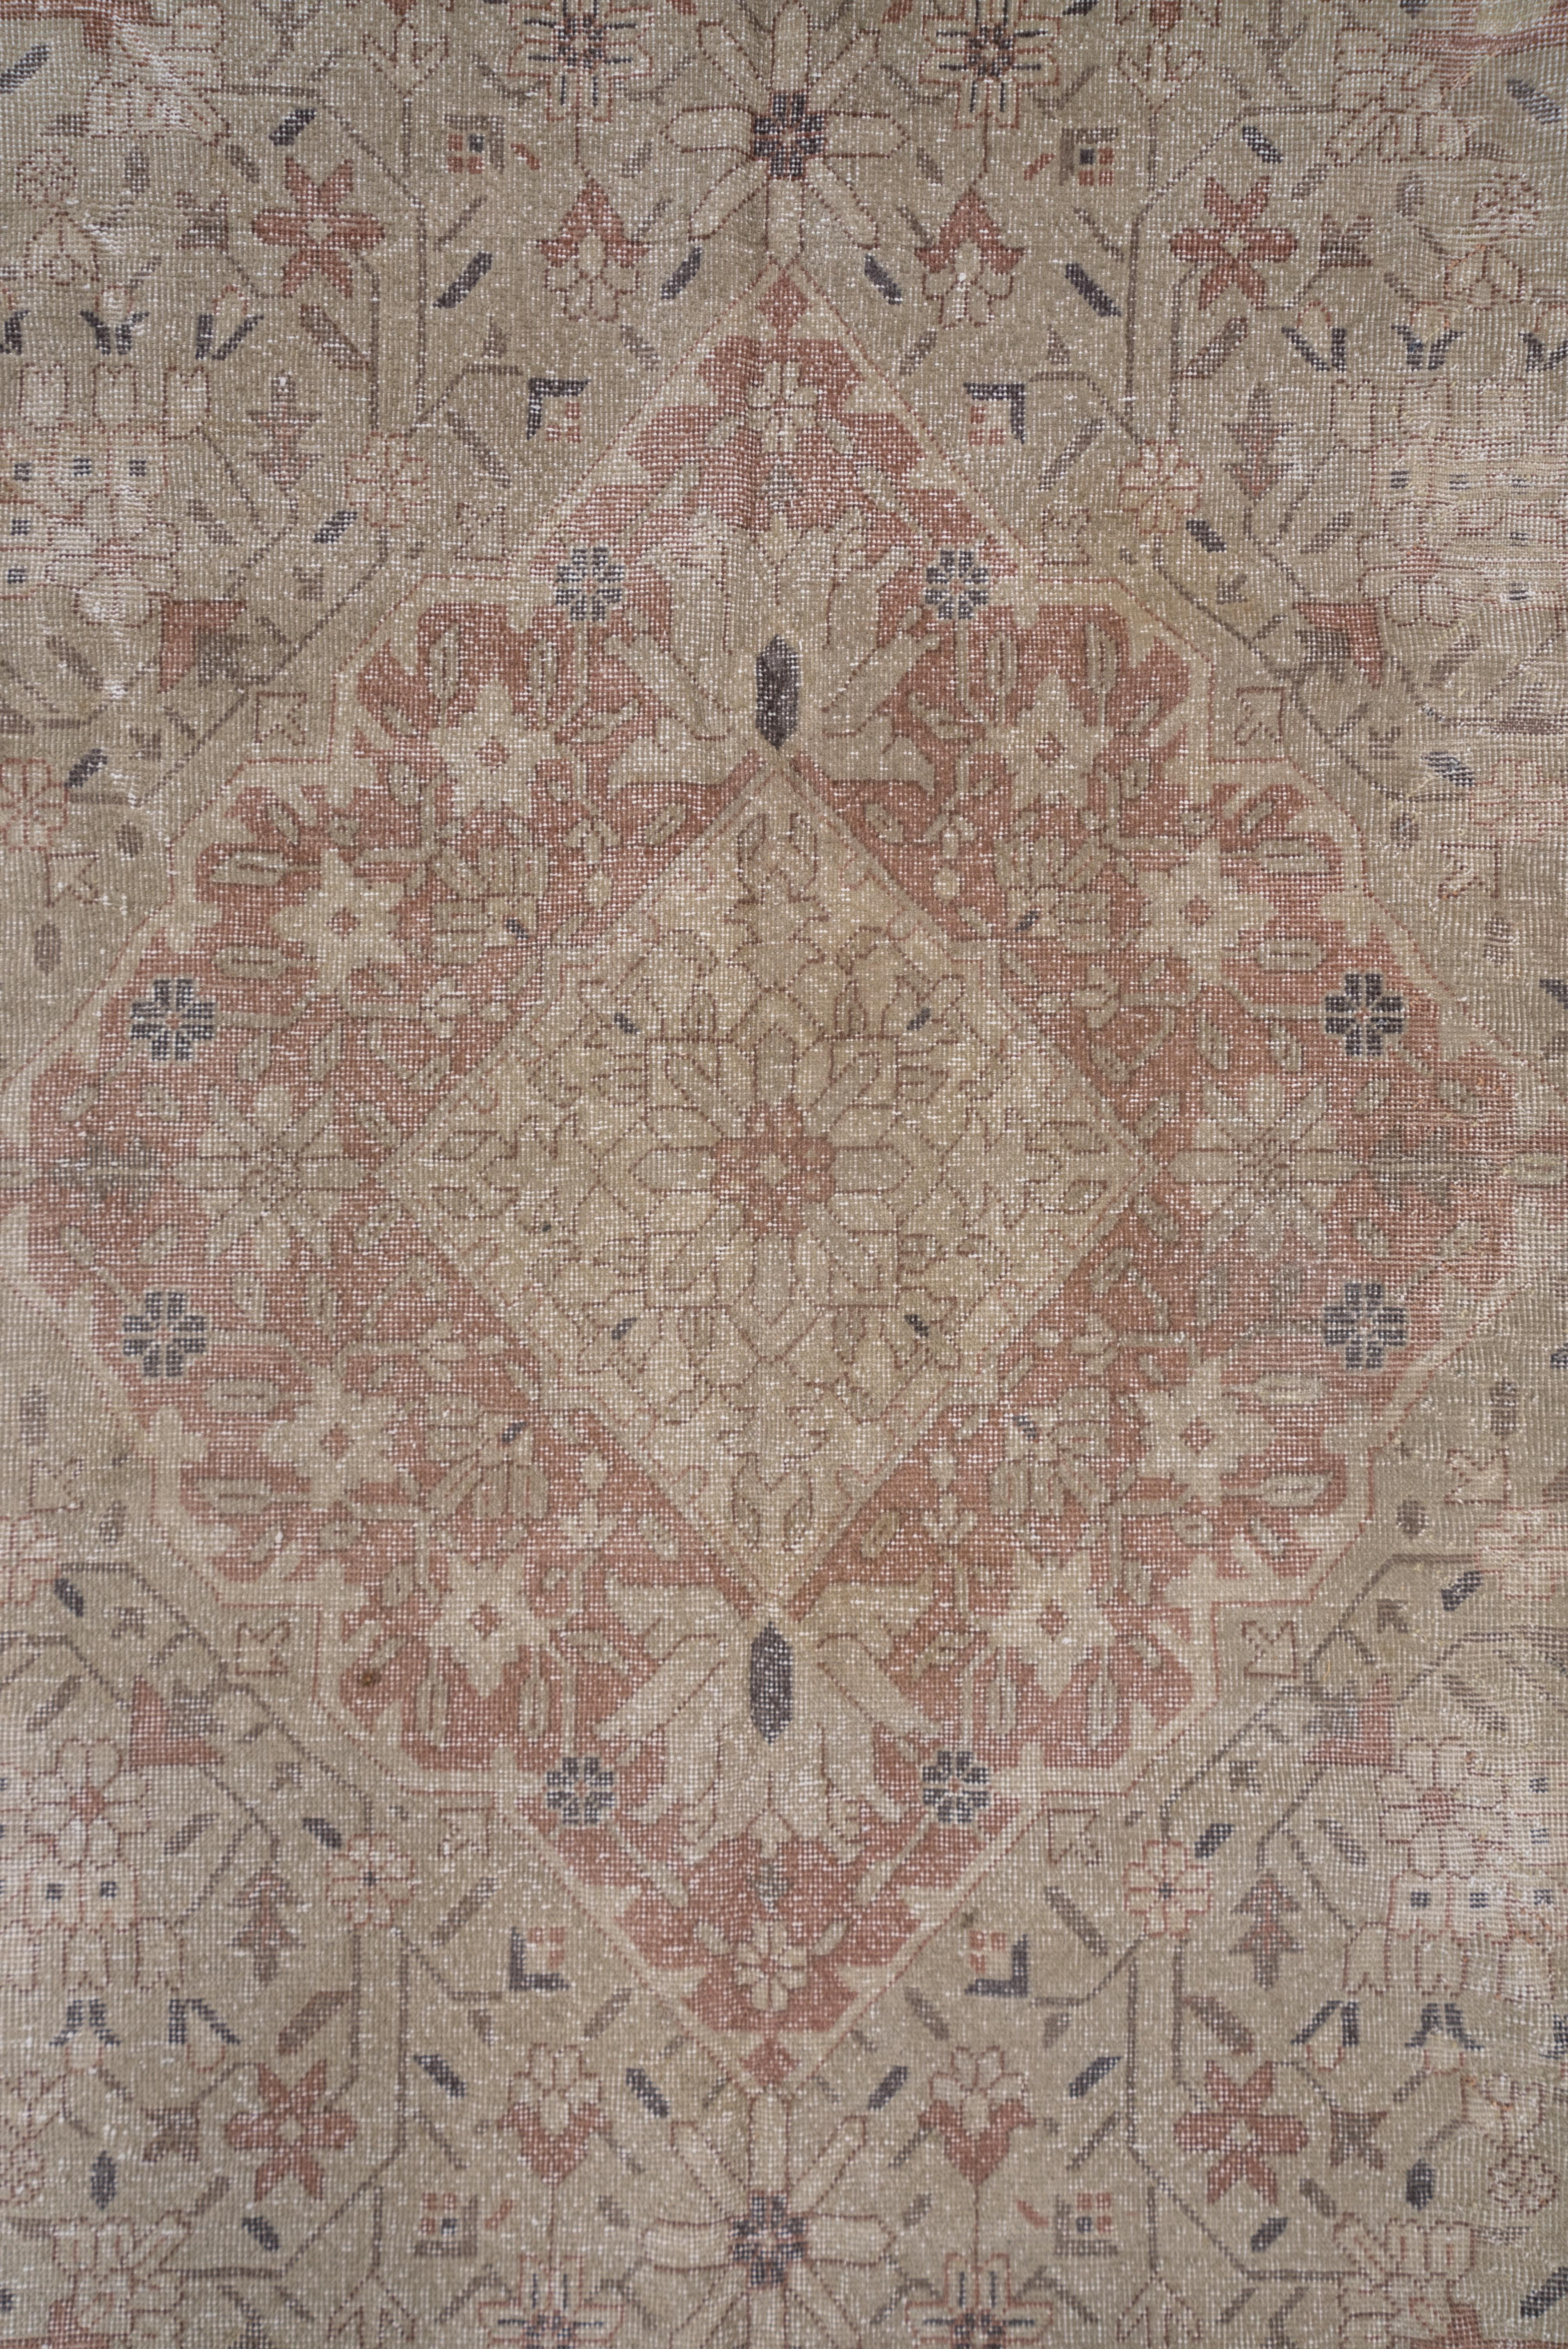 Other Subdued Antique Sivas Carpet For Sale